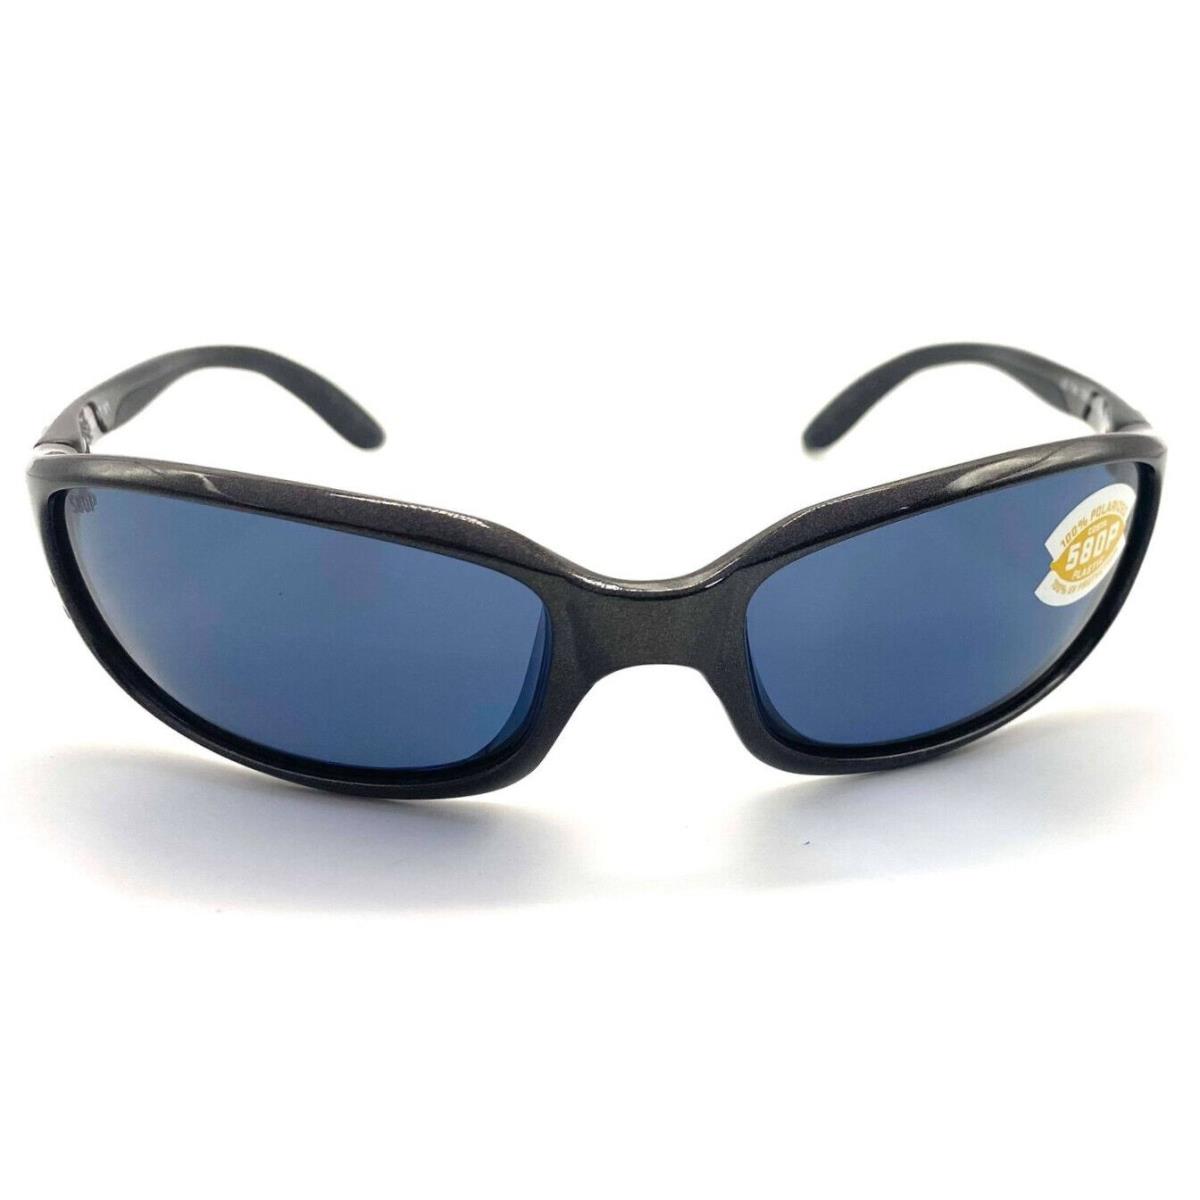 Costa Del Mar Brine Sunglasses Gunmetal / Gray 580Plastic